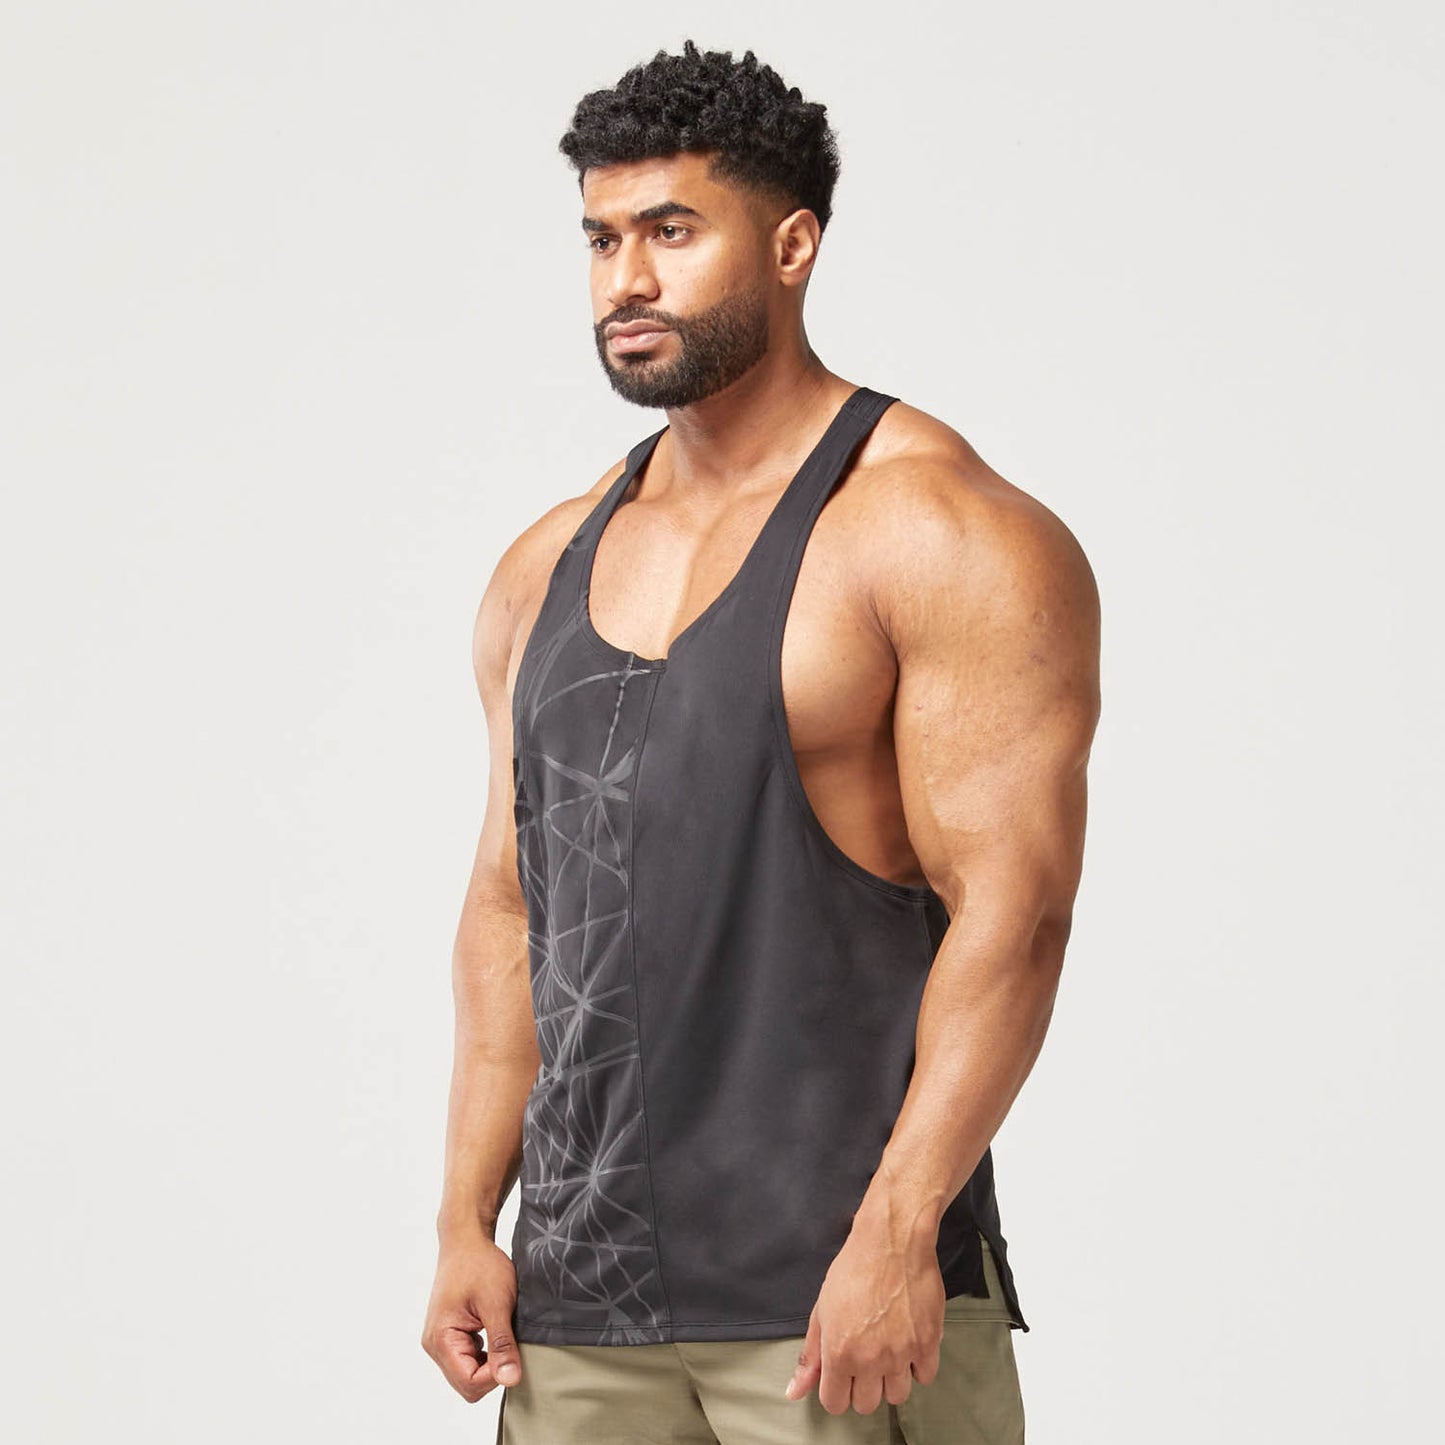 squatwolf-gym-wear-code-split-stringer-black-stringer-vests-for-men